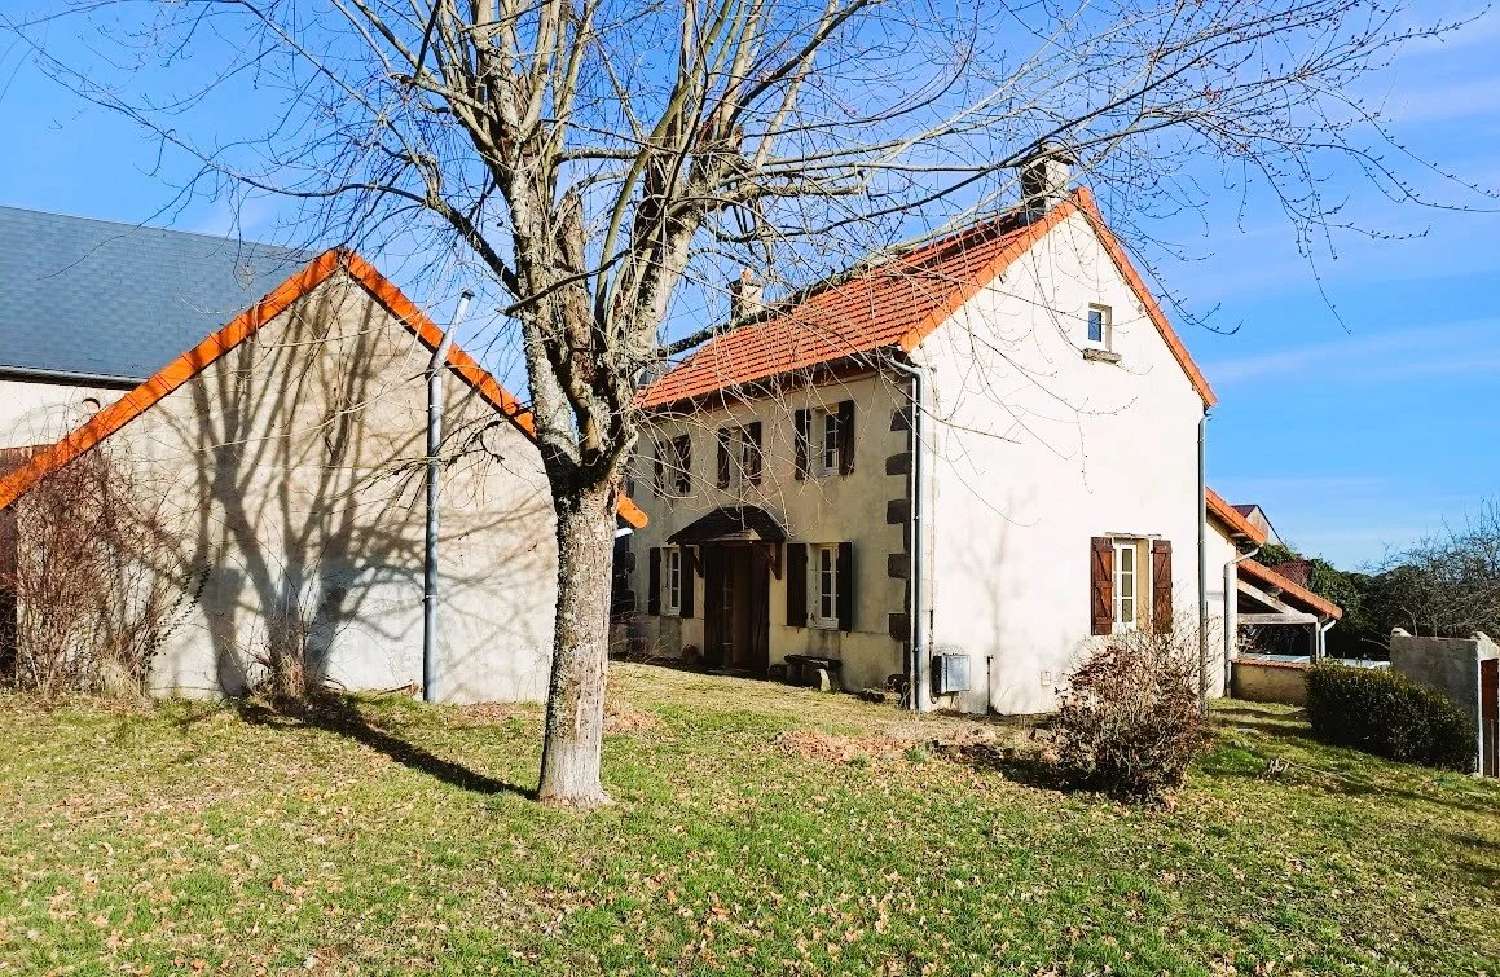 house for sale Saint-Éloy-les-Mines, Puy-de-Dôme ( Auvergne-Rhône-Alpes) picture 2